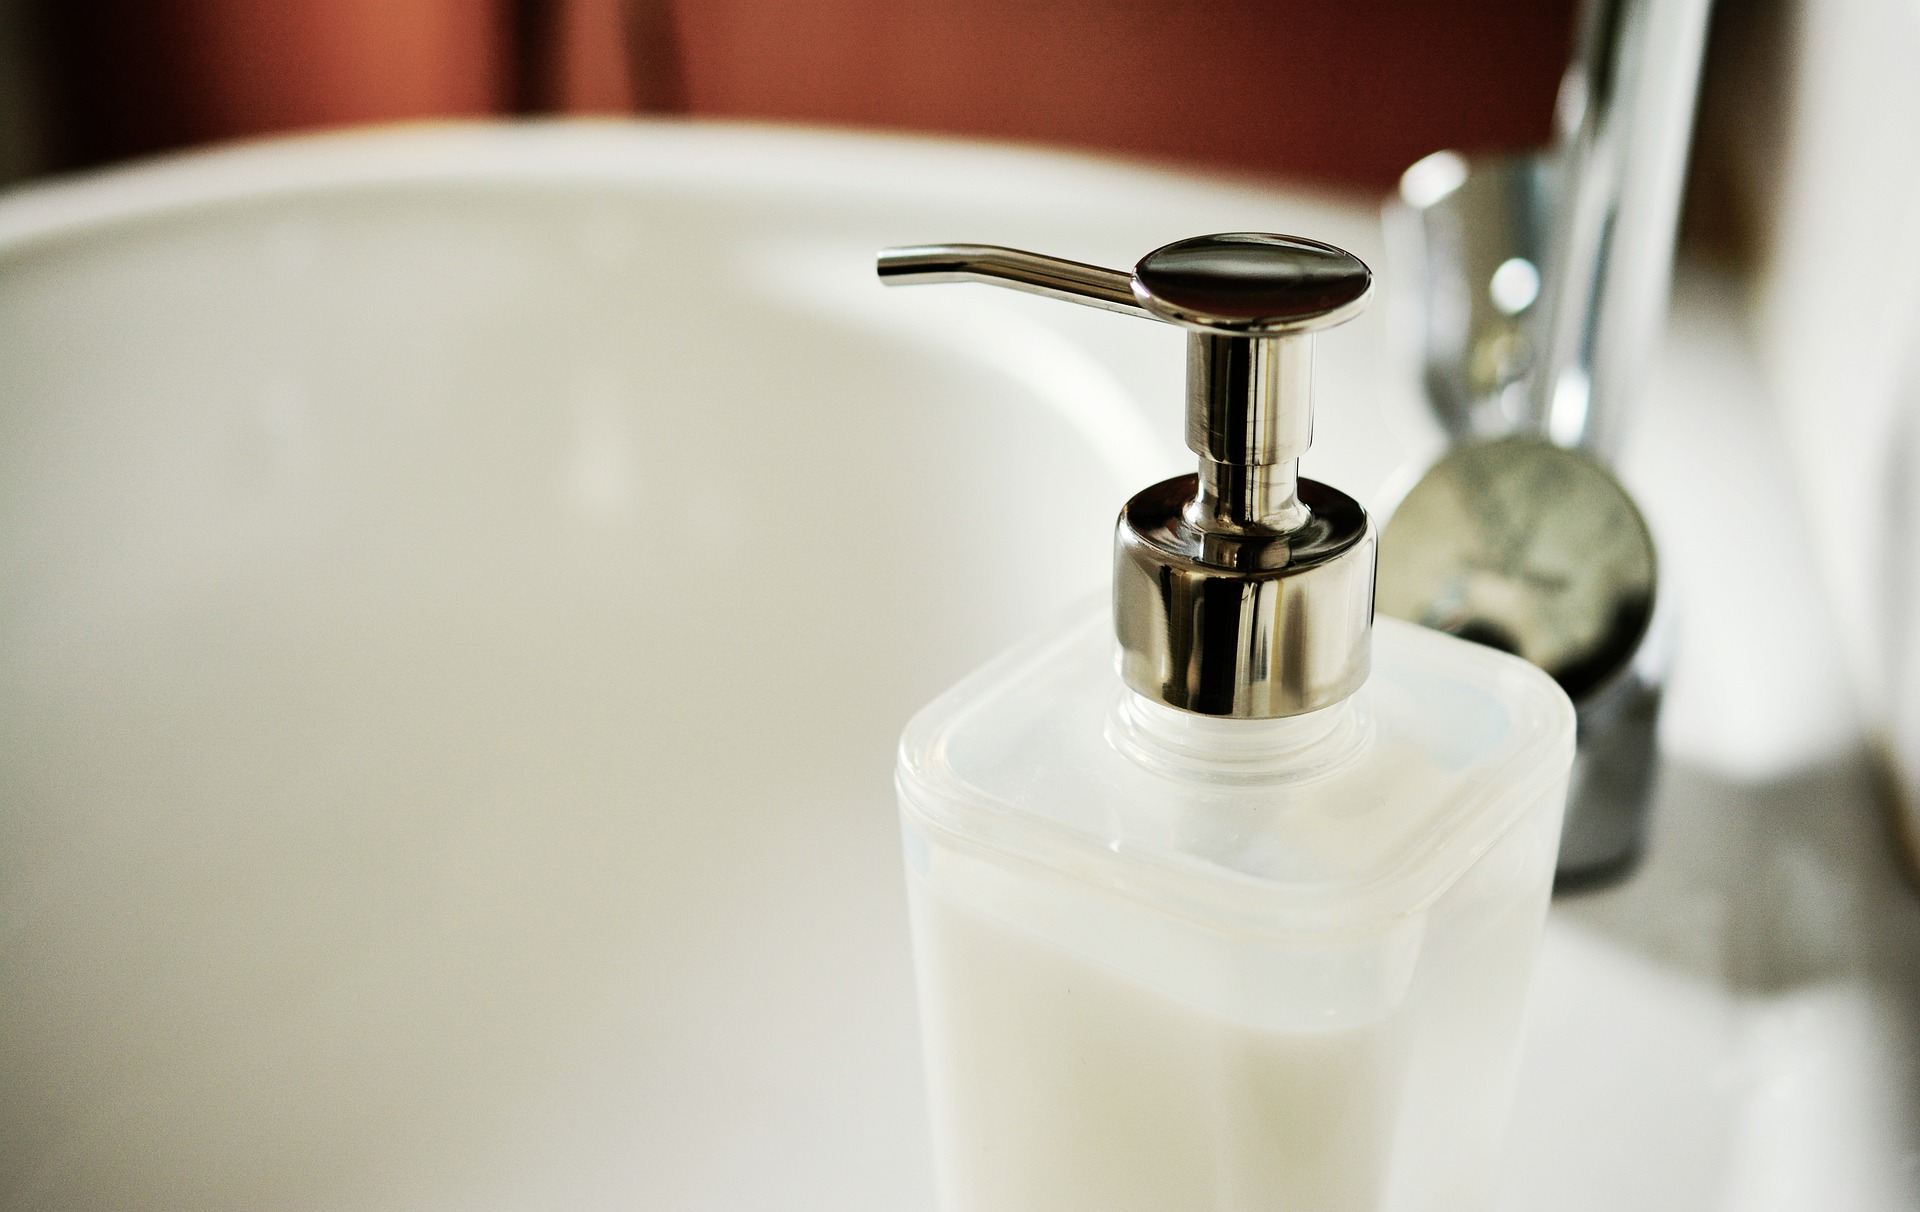 Jakie są zalety zastosowania dozowników do mydła w płynie?